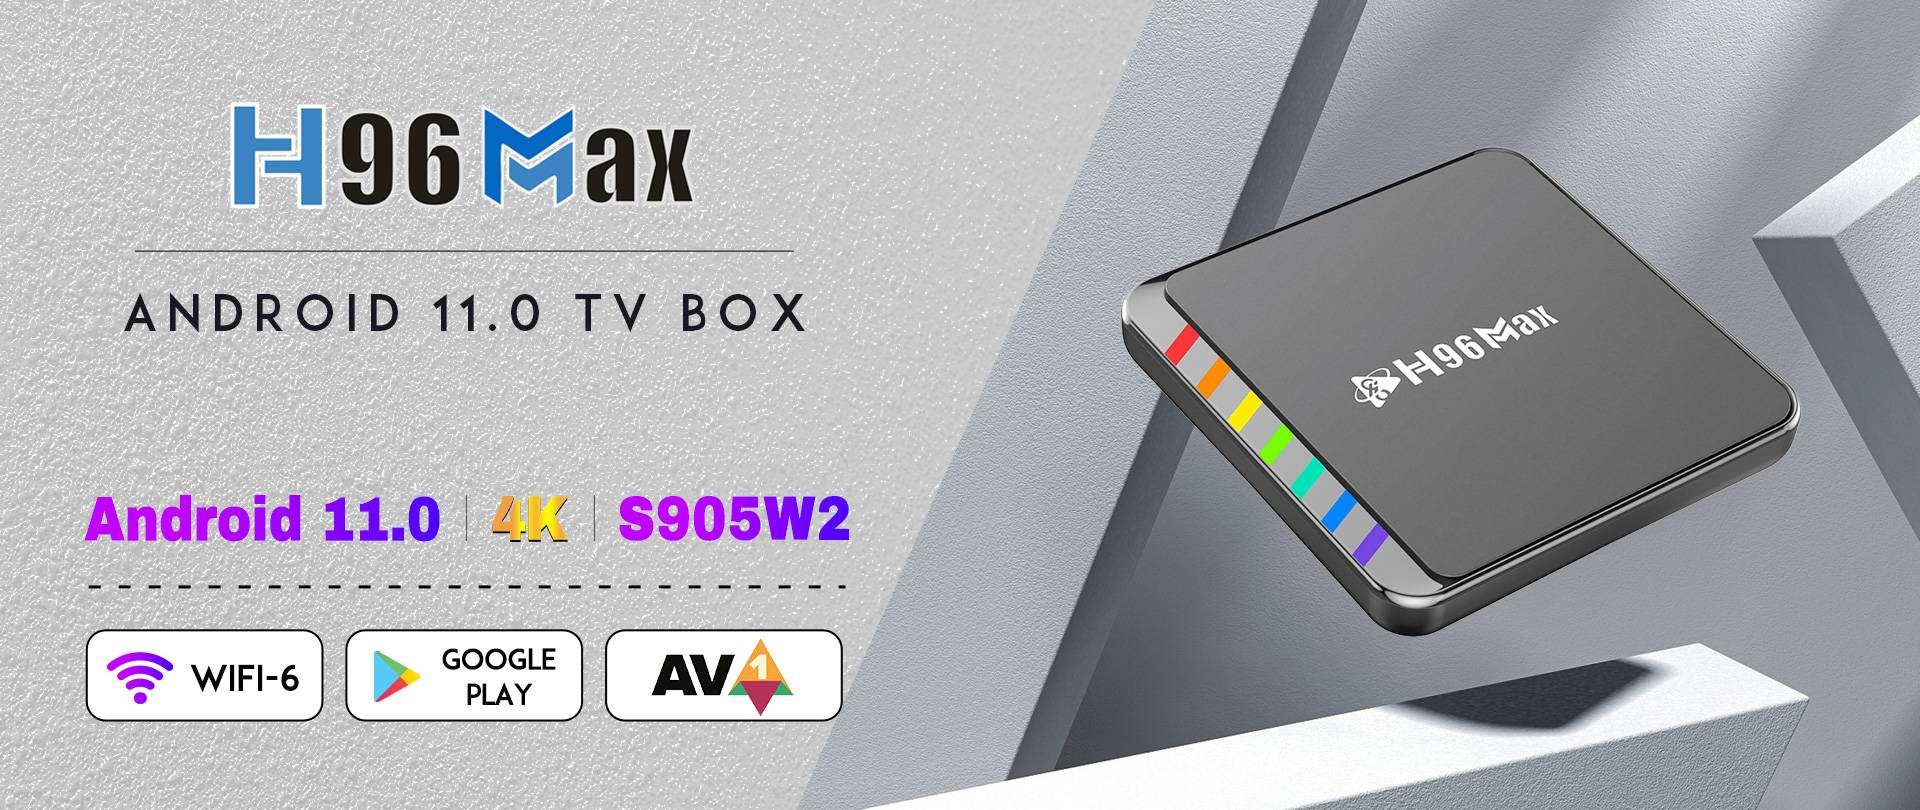 h96max w2 android 11.0 tv box set top box